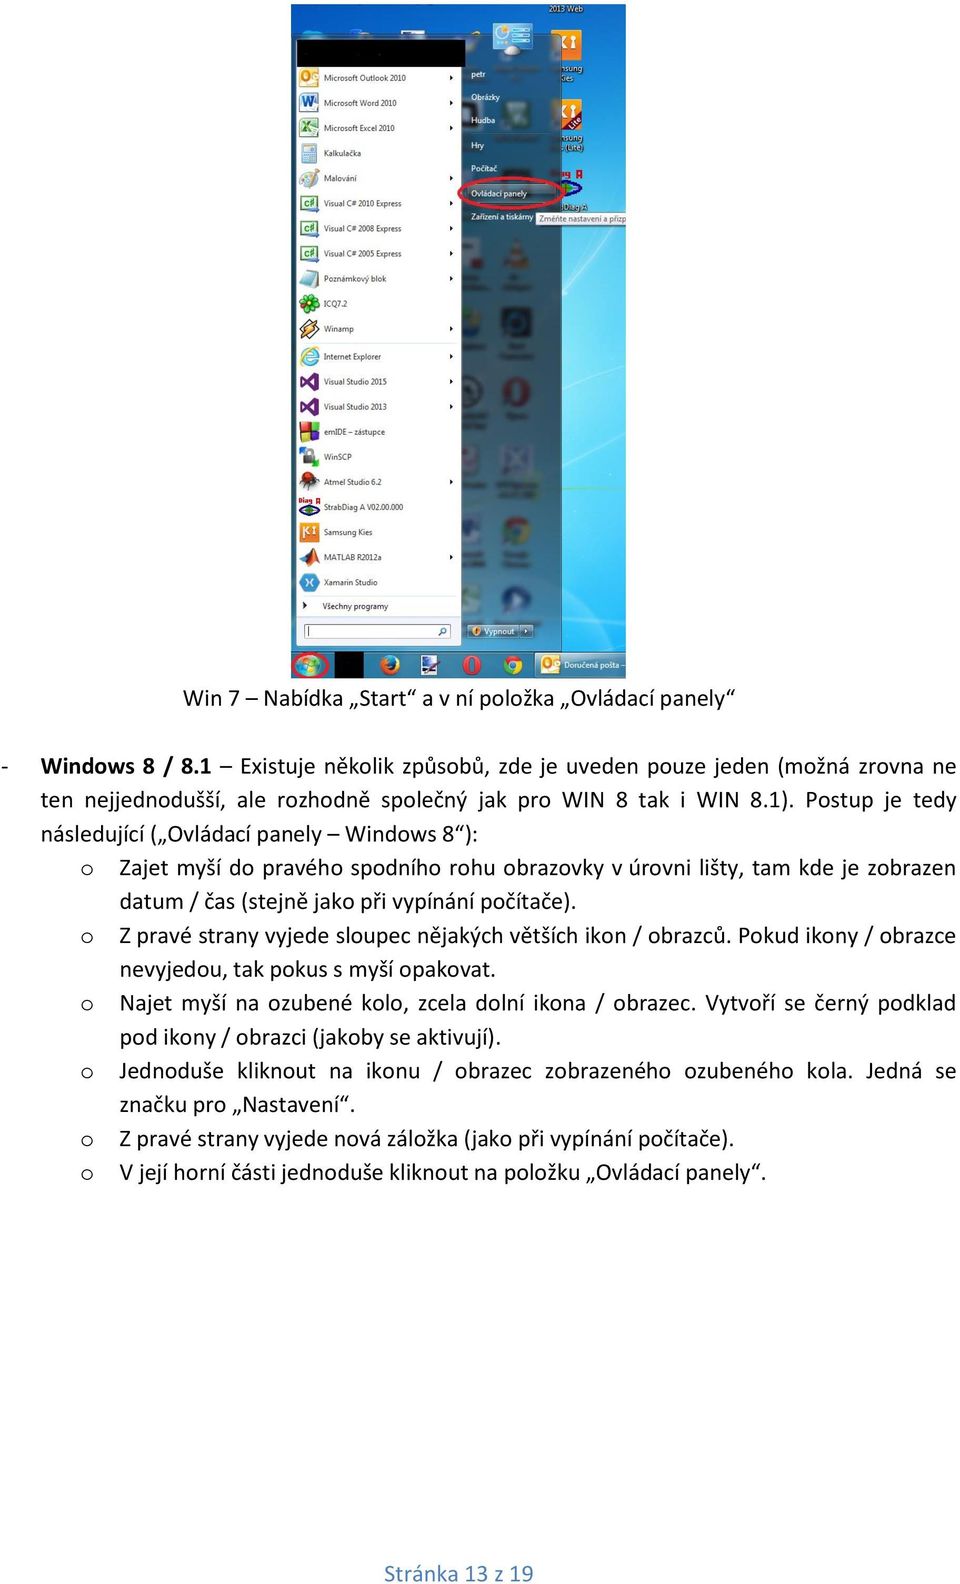 Postup je tedy následující ( Ovládací panely Windows 8 ): o Zajet myší do pravého spodního rohu obrazovky v úrovni lišty, tam kde je zobrazen datum / čas (stejně jako při vypínání počítače).